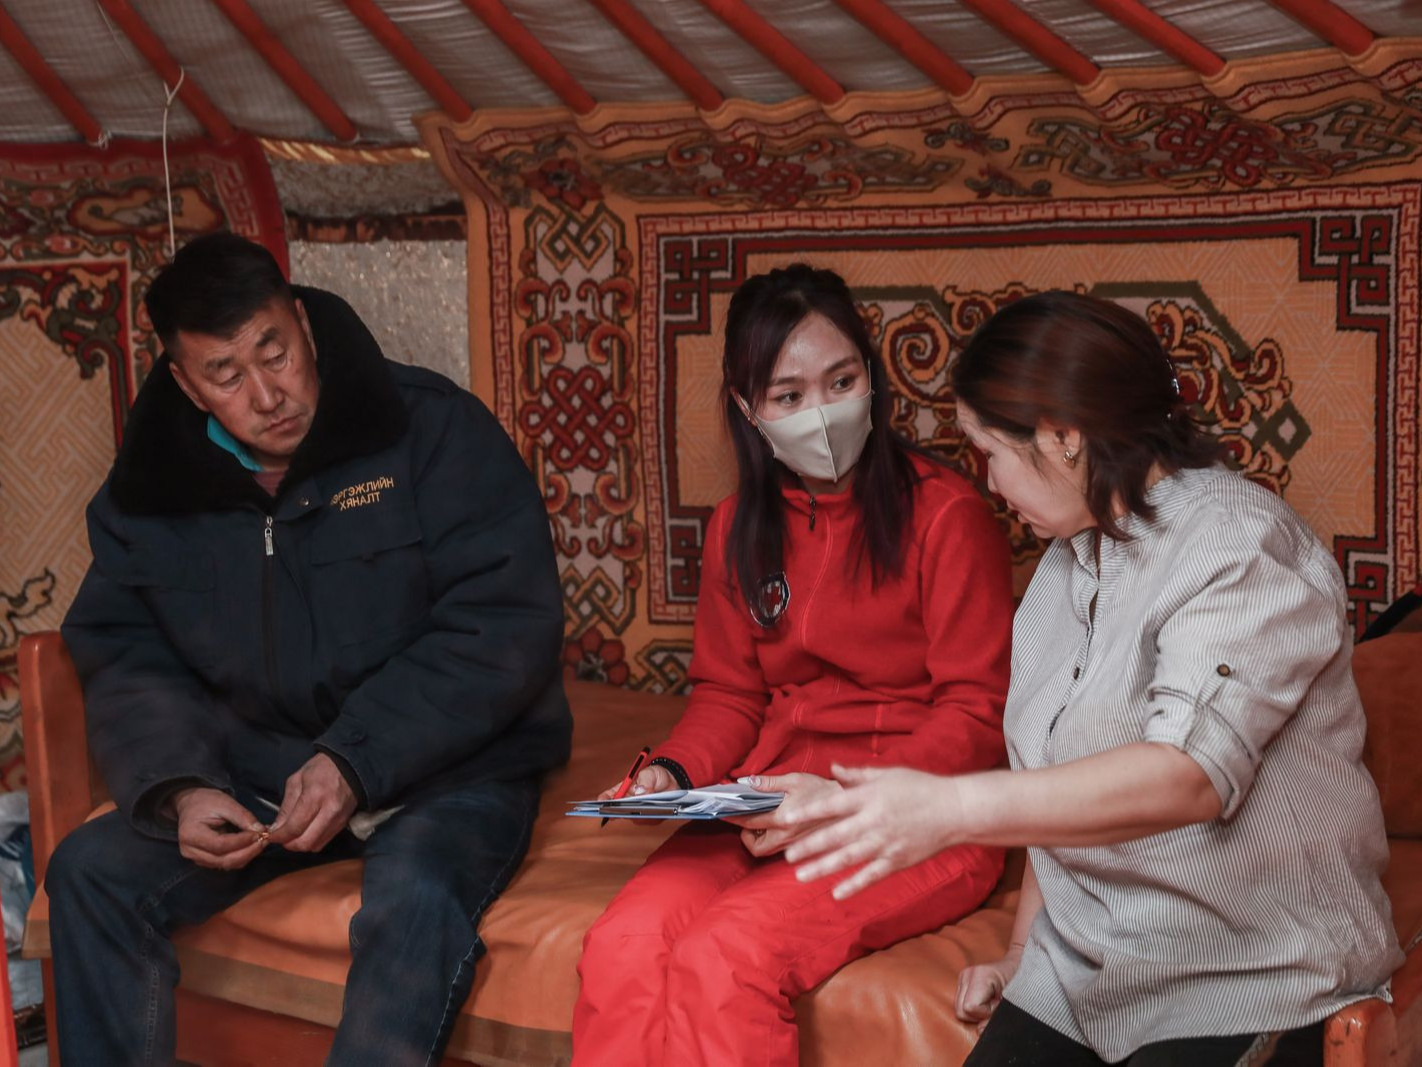 Монголын улаан загалмай нийгэмлэгээс өвөлжилт хүндэрсэн аймгийн малчдад БЭЛЭН МӨНГӨНИЙ тусламж үзүүлж байна